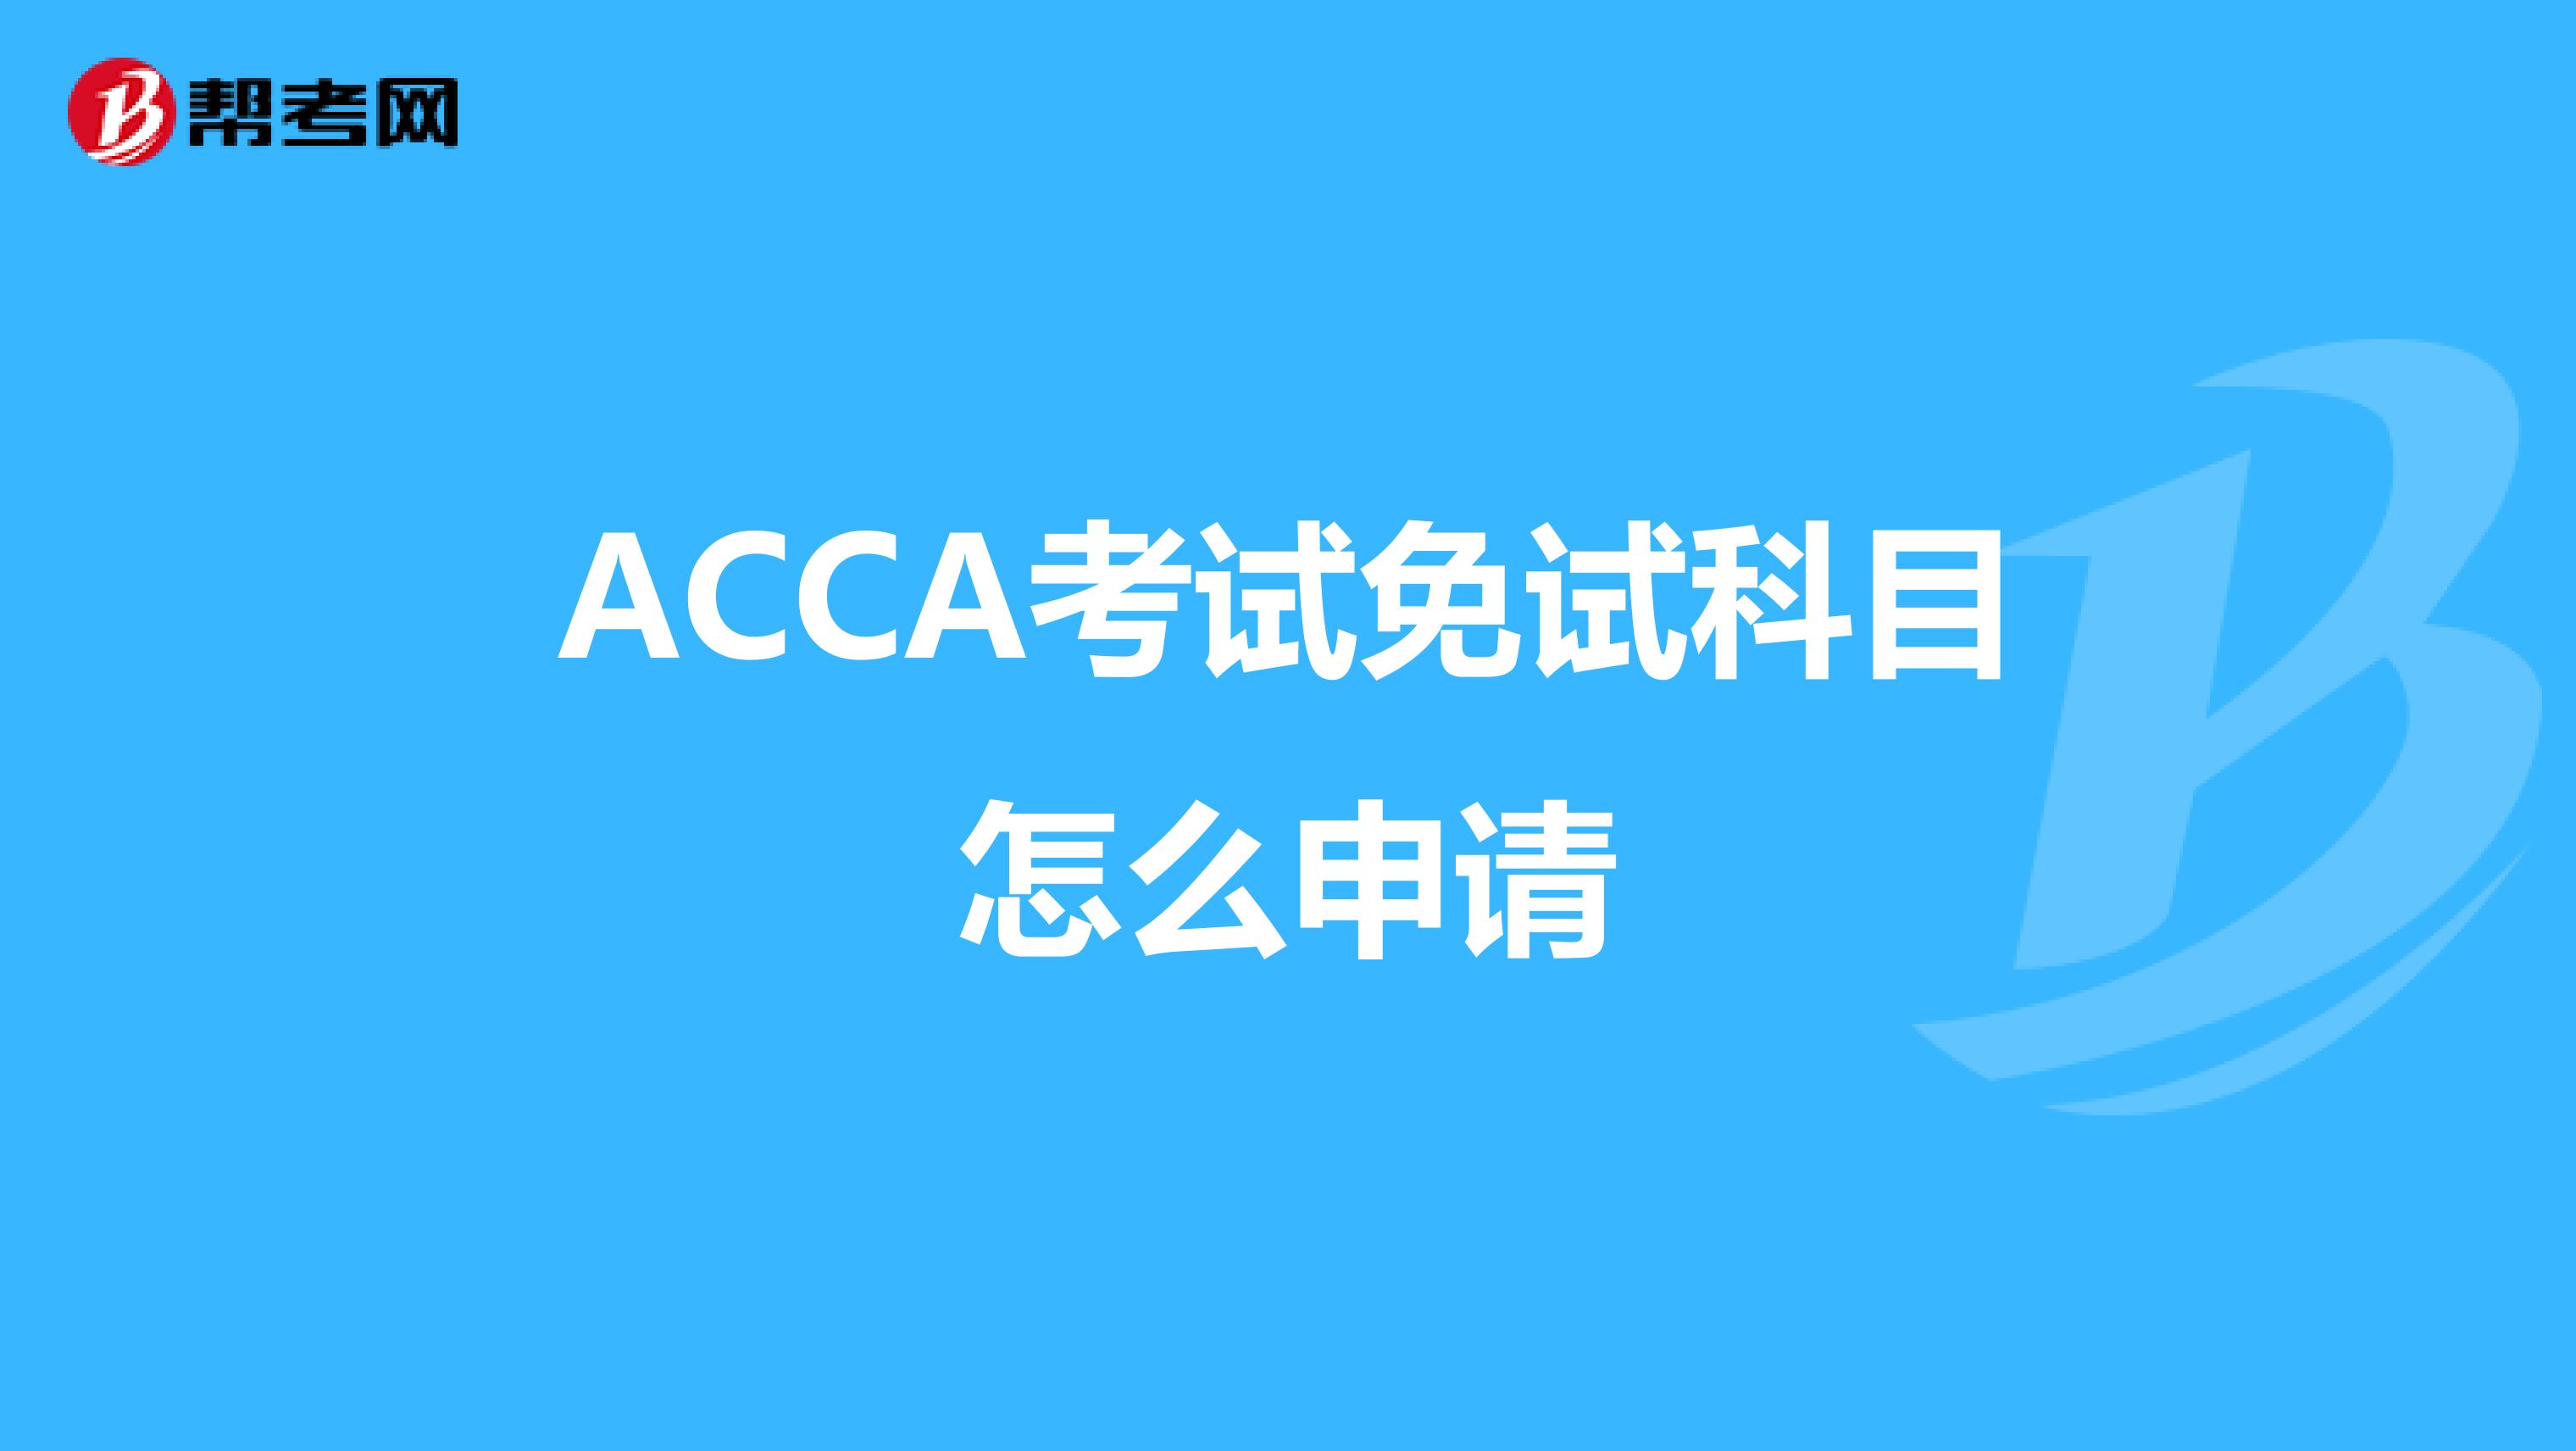 ACCA考试免试科目怎么申请